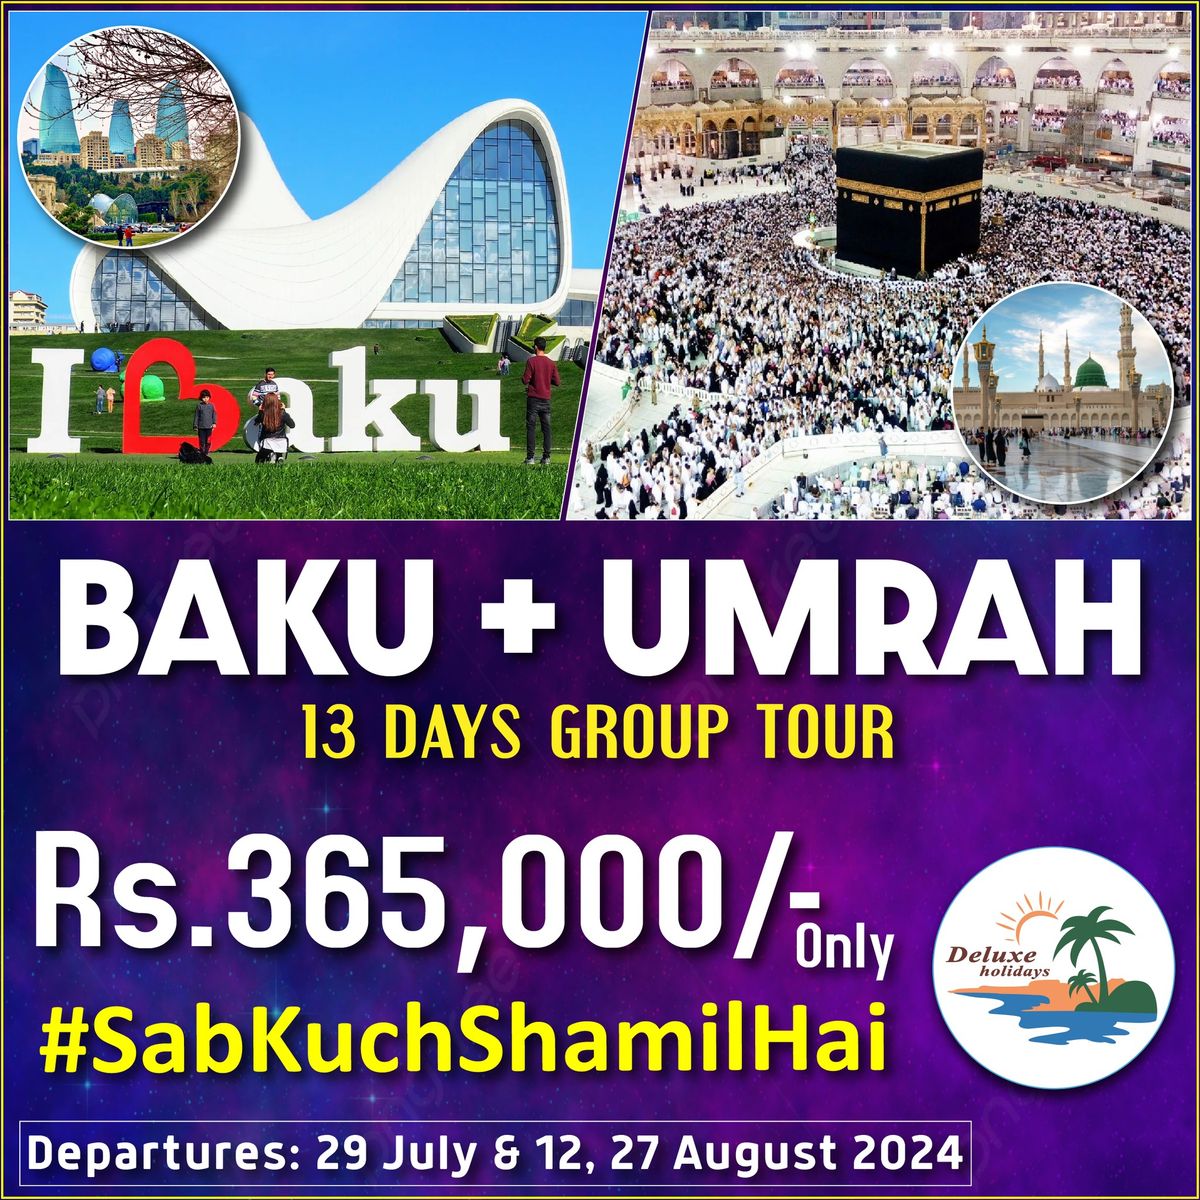 UMRAH + BAKU 13 DAYS GROUP TOUR